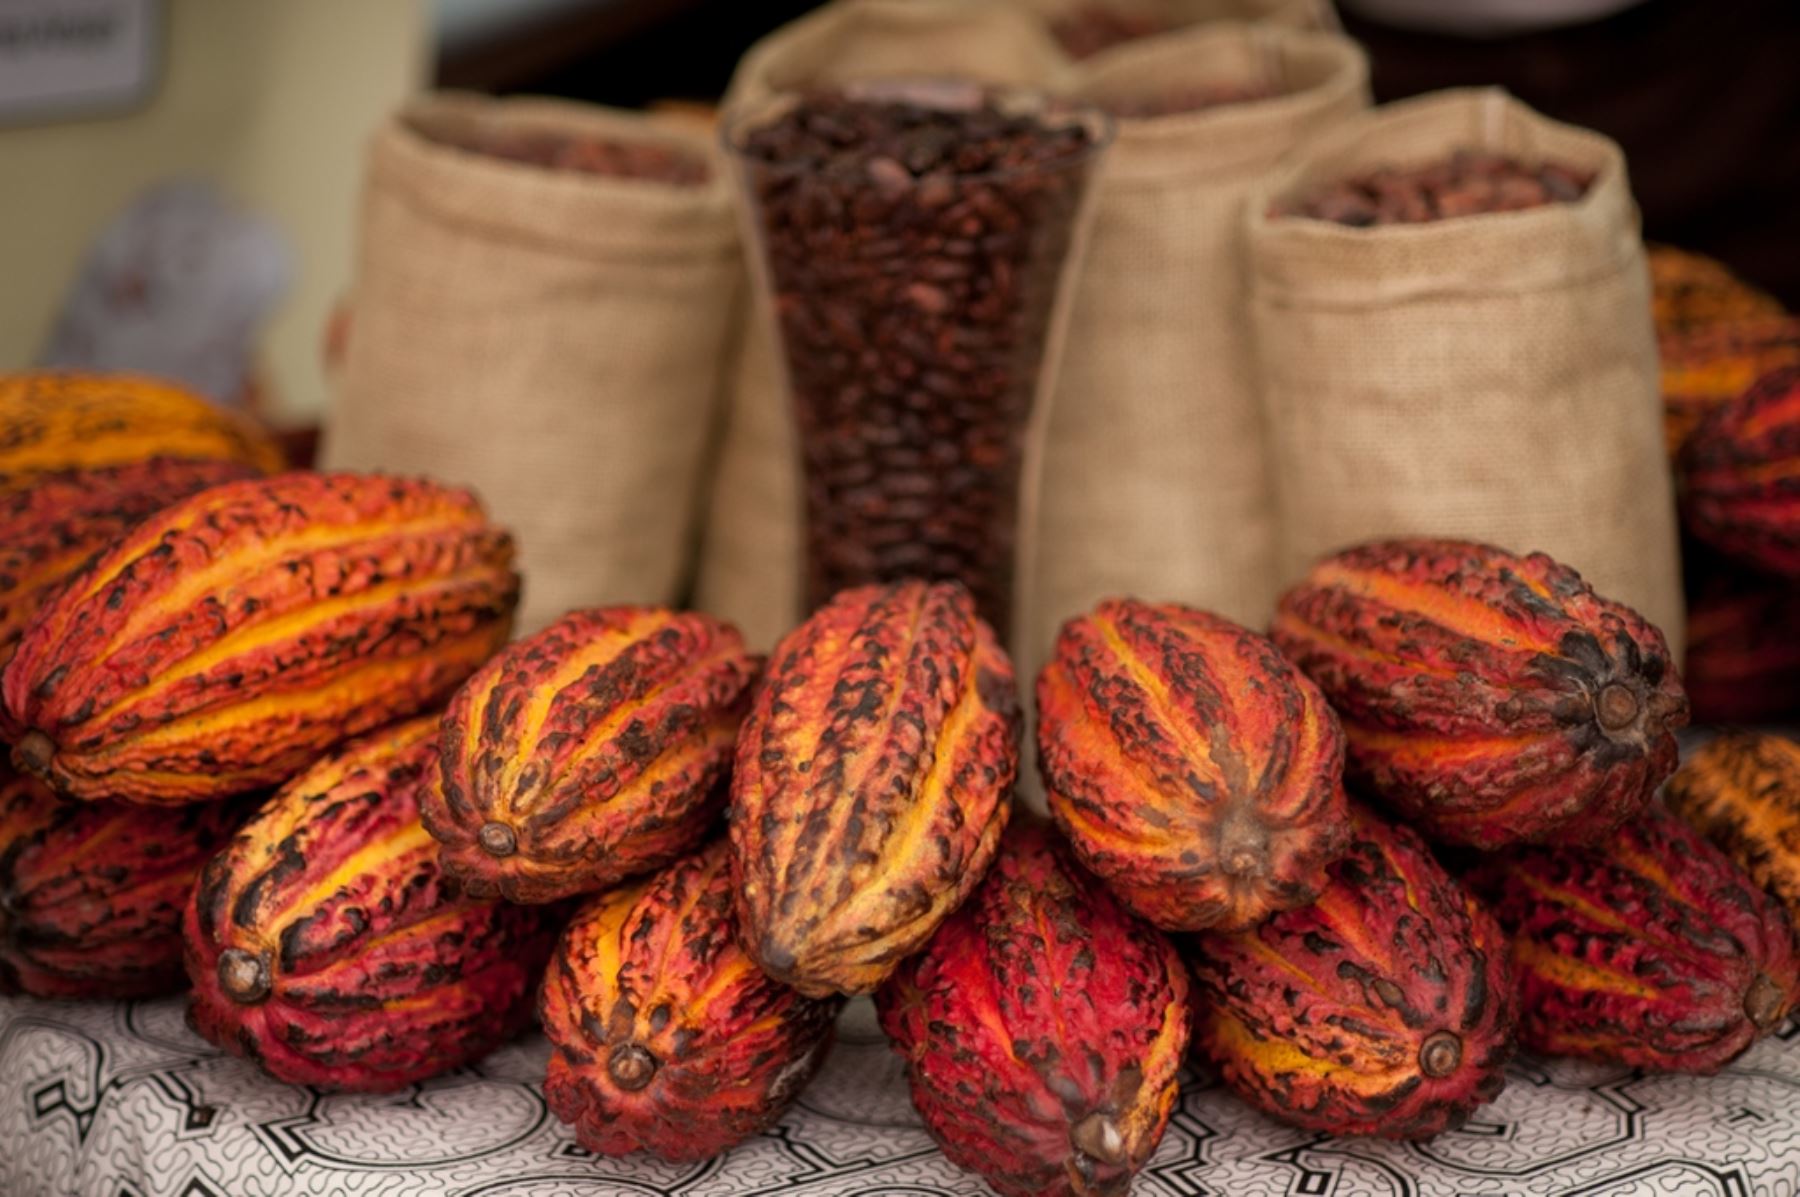 El cacao es uno de los cultivos bandera para el desarrollo alternativo en el Perú y permite a los agricultores dejar de lado los cultivos de hoja de coca e integrarse a una economía lícita.